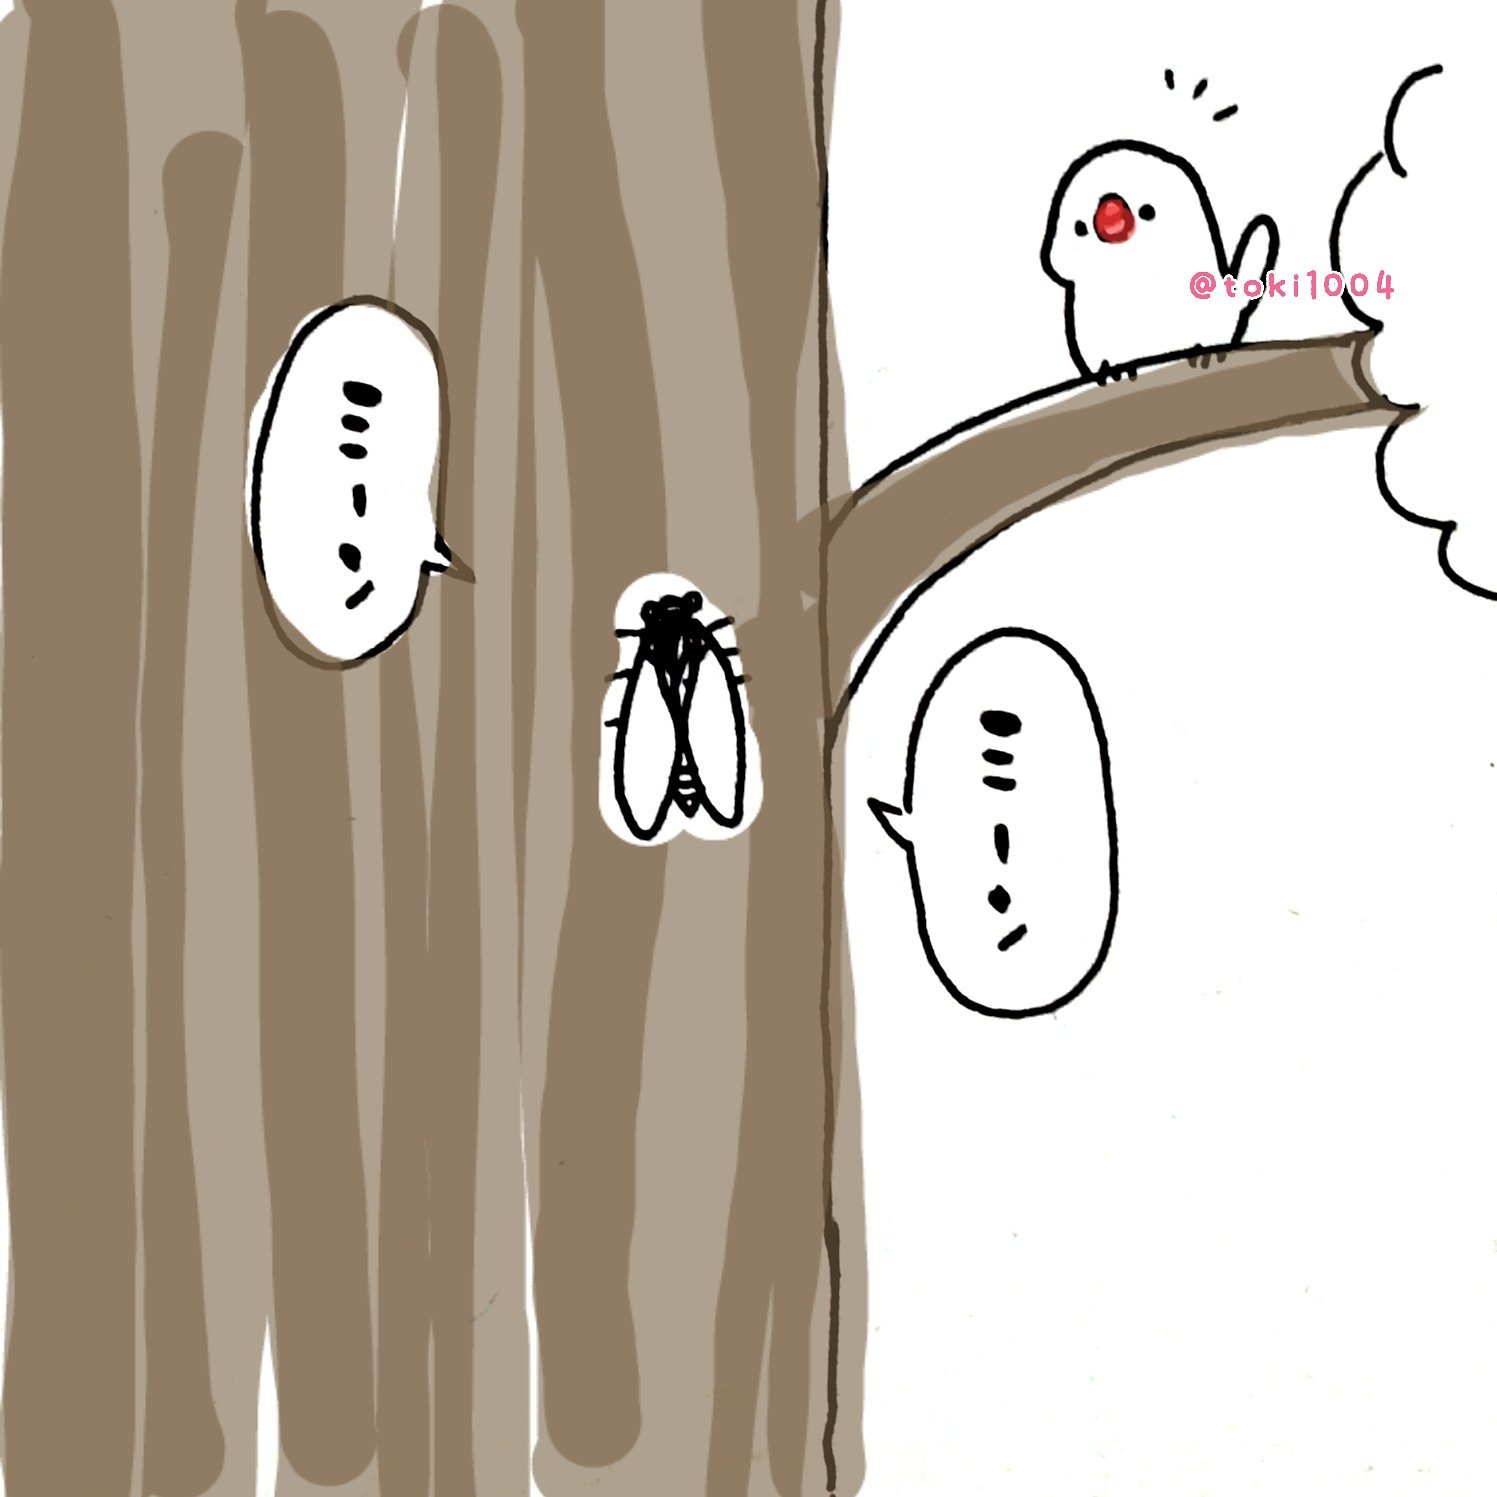 とき 10 24 25は大阪で鳥さんのイベント セミないてた 絵 イラスト イラストレーター お絵描き ドローイング 一発描き ボールペン 文鳥 Bird らくがき 一日一絵 イラスト基地 イラストの森 セミ 蝉 木 夏